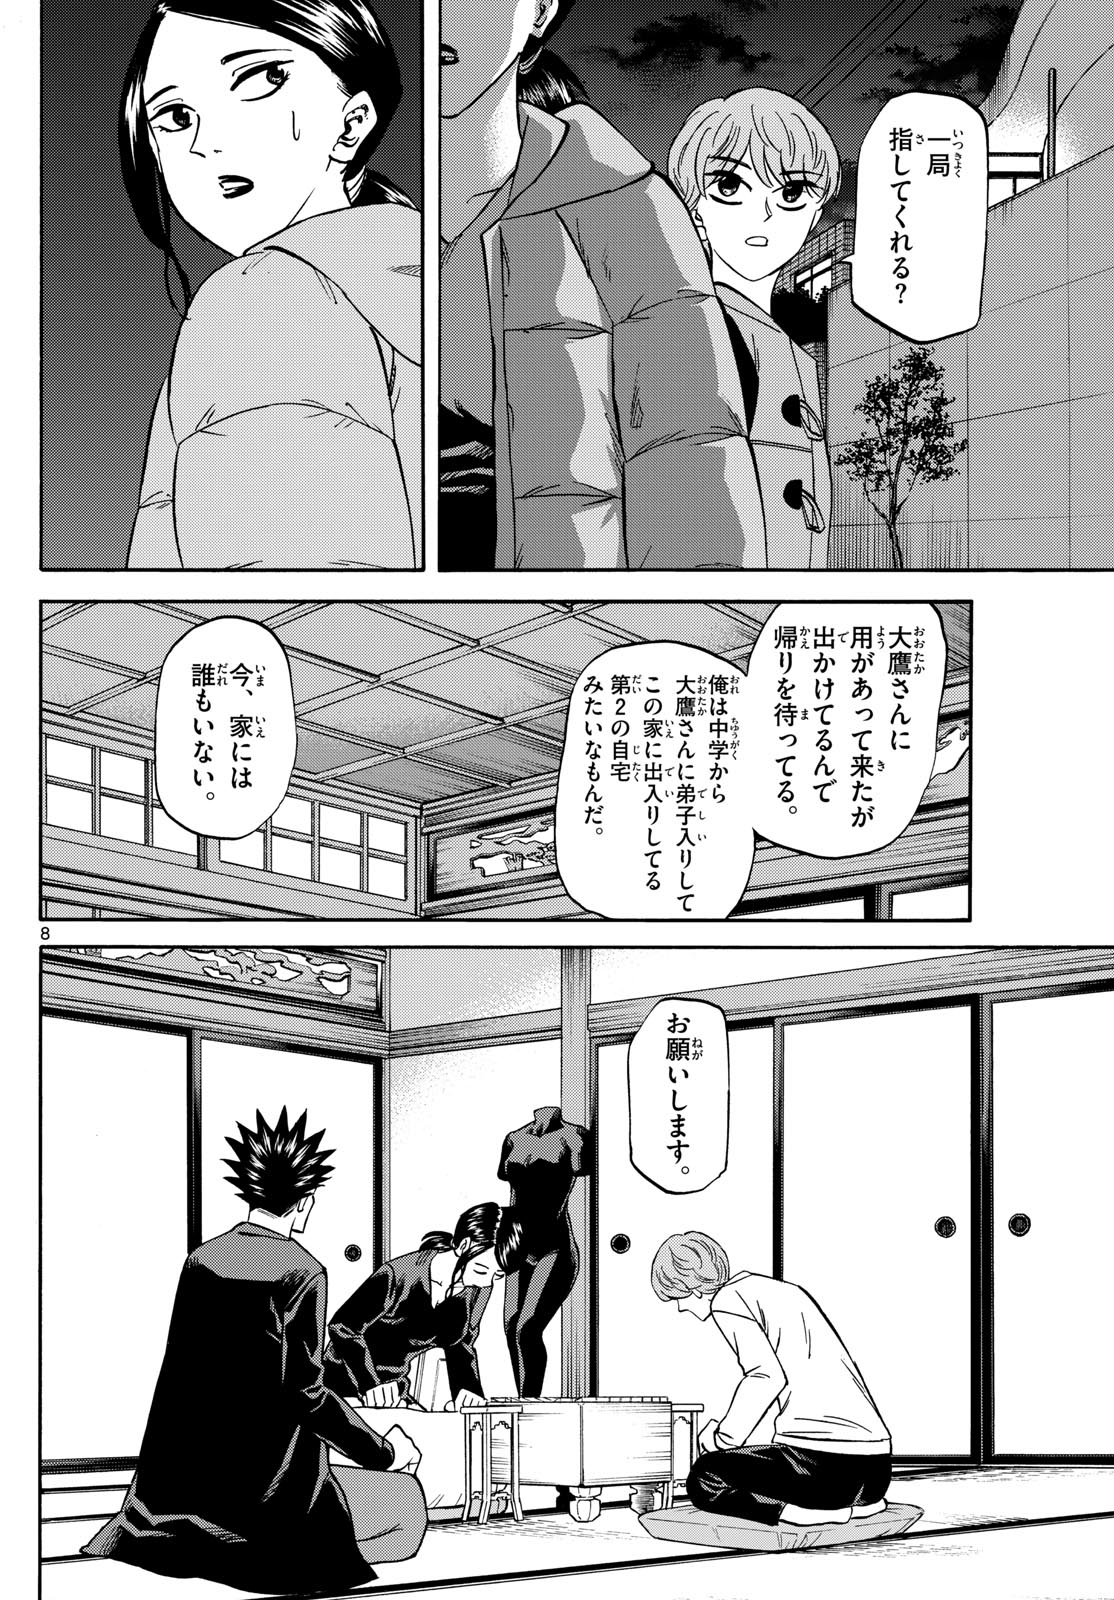 Tatsu to Ichigo - Chapter 173 - Page 8